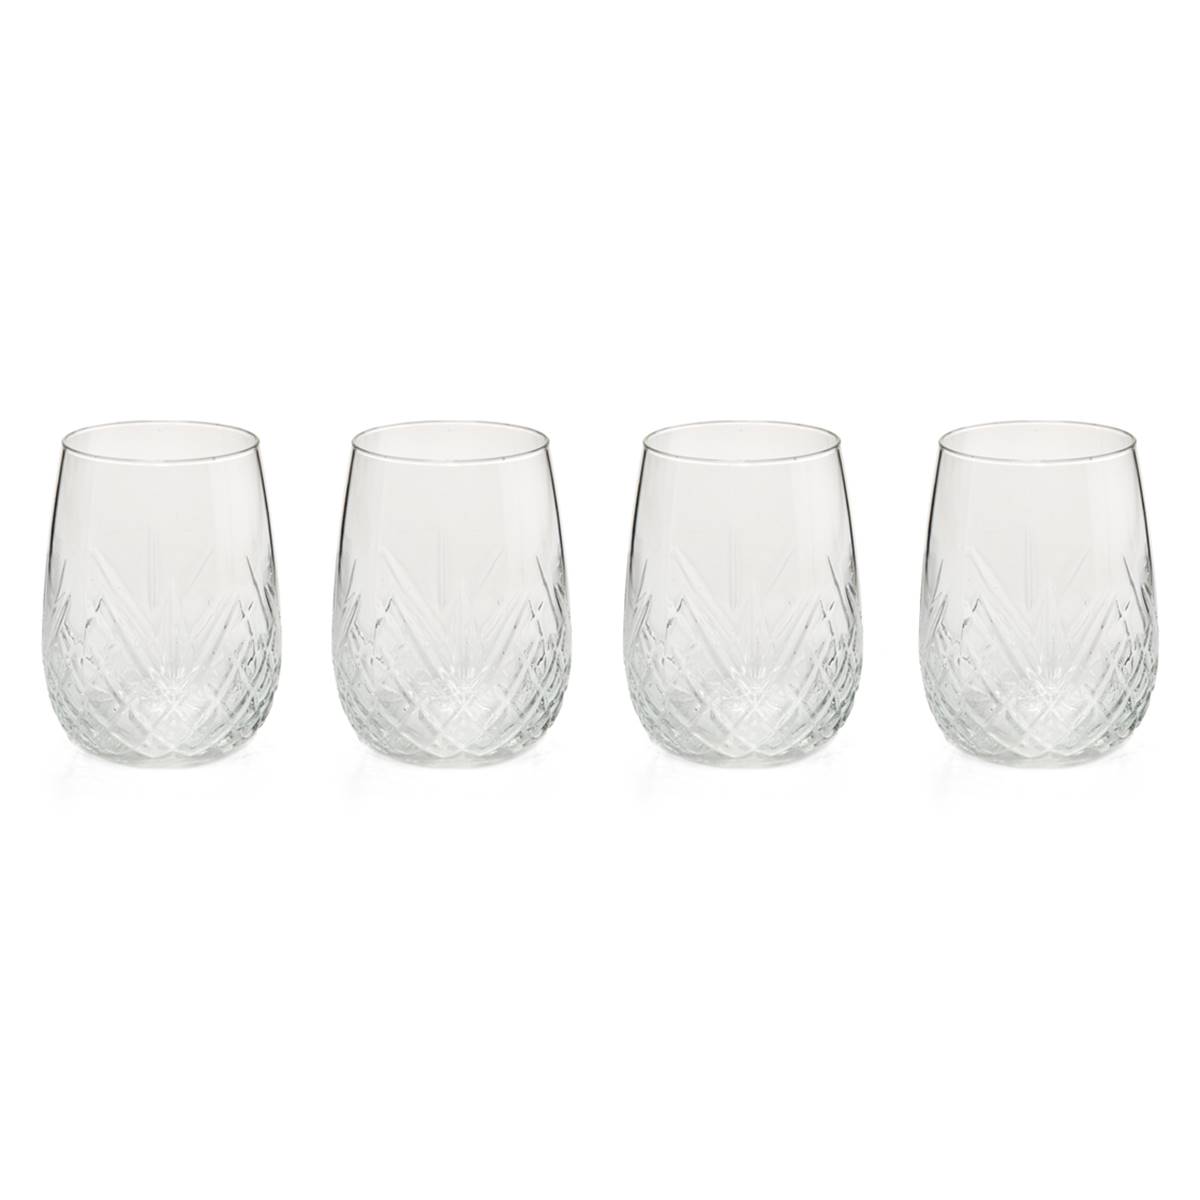 Godinger Set Of 4 Dublin Stemless Wine Glasses